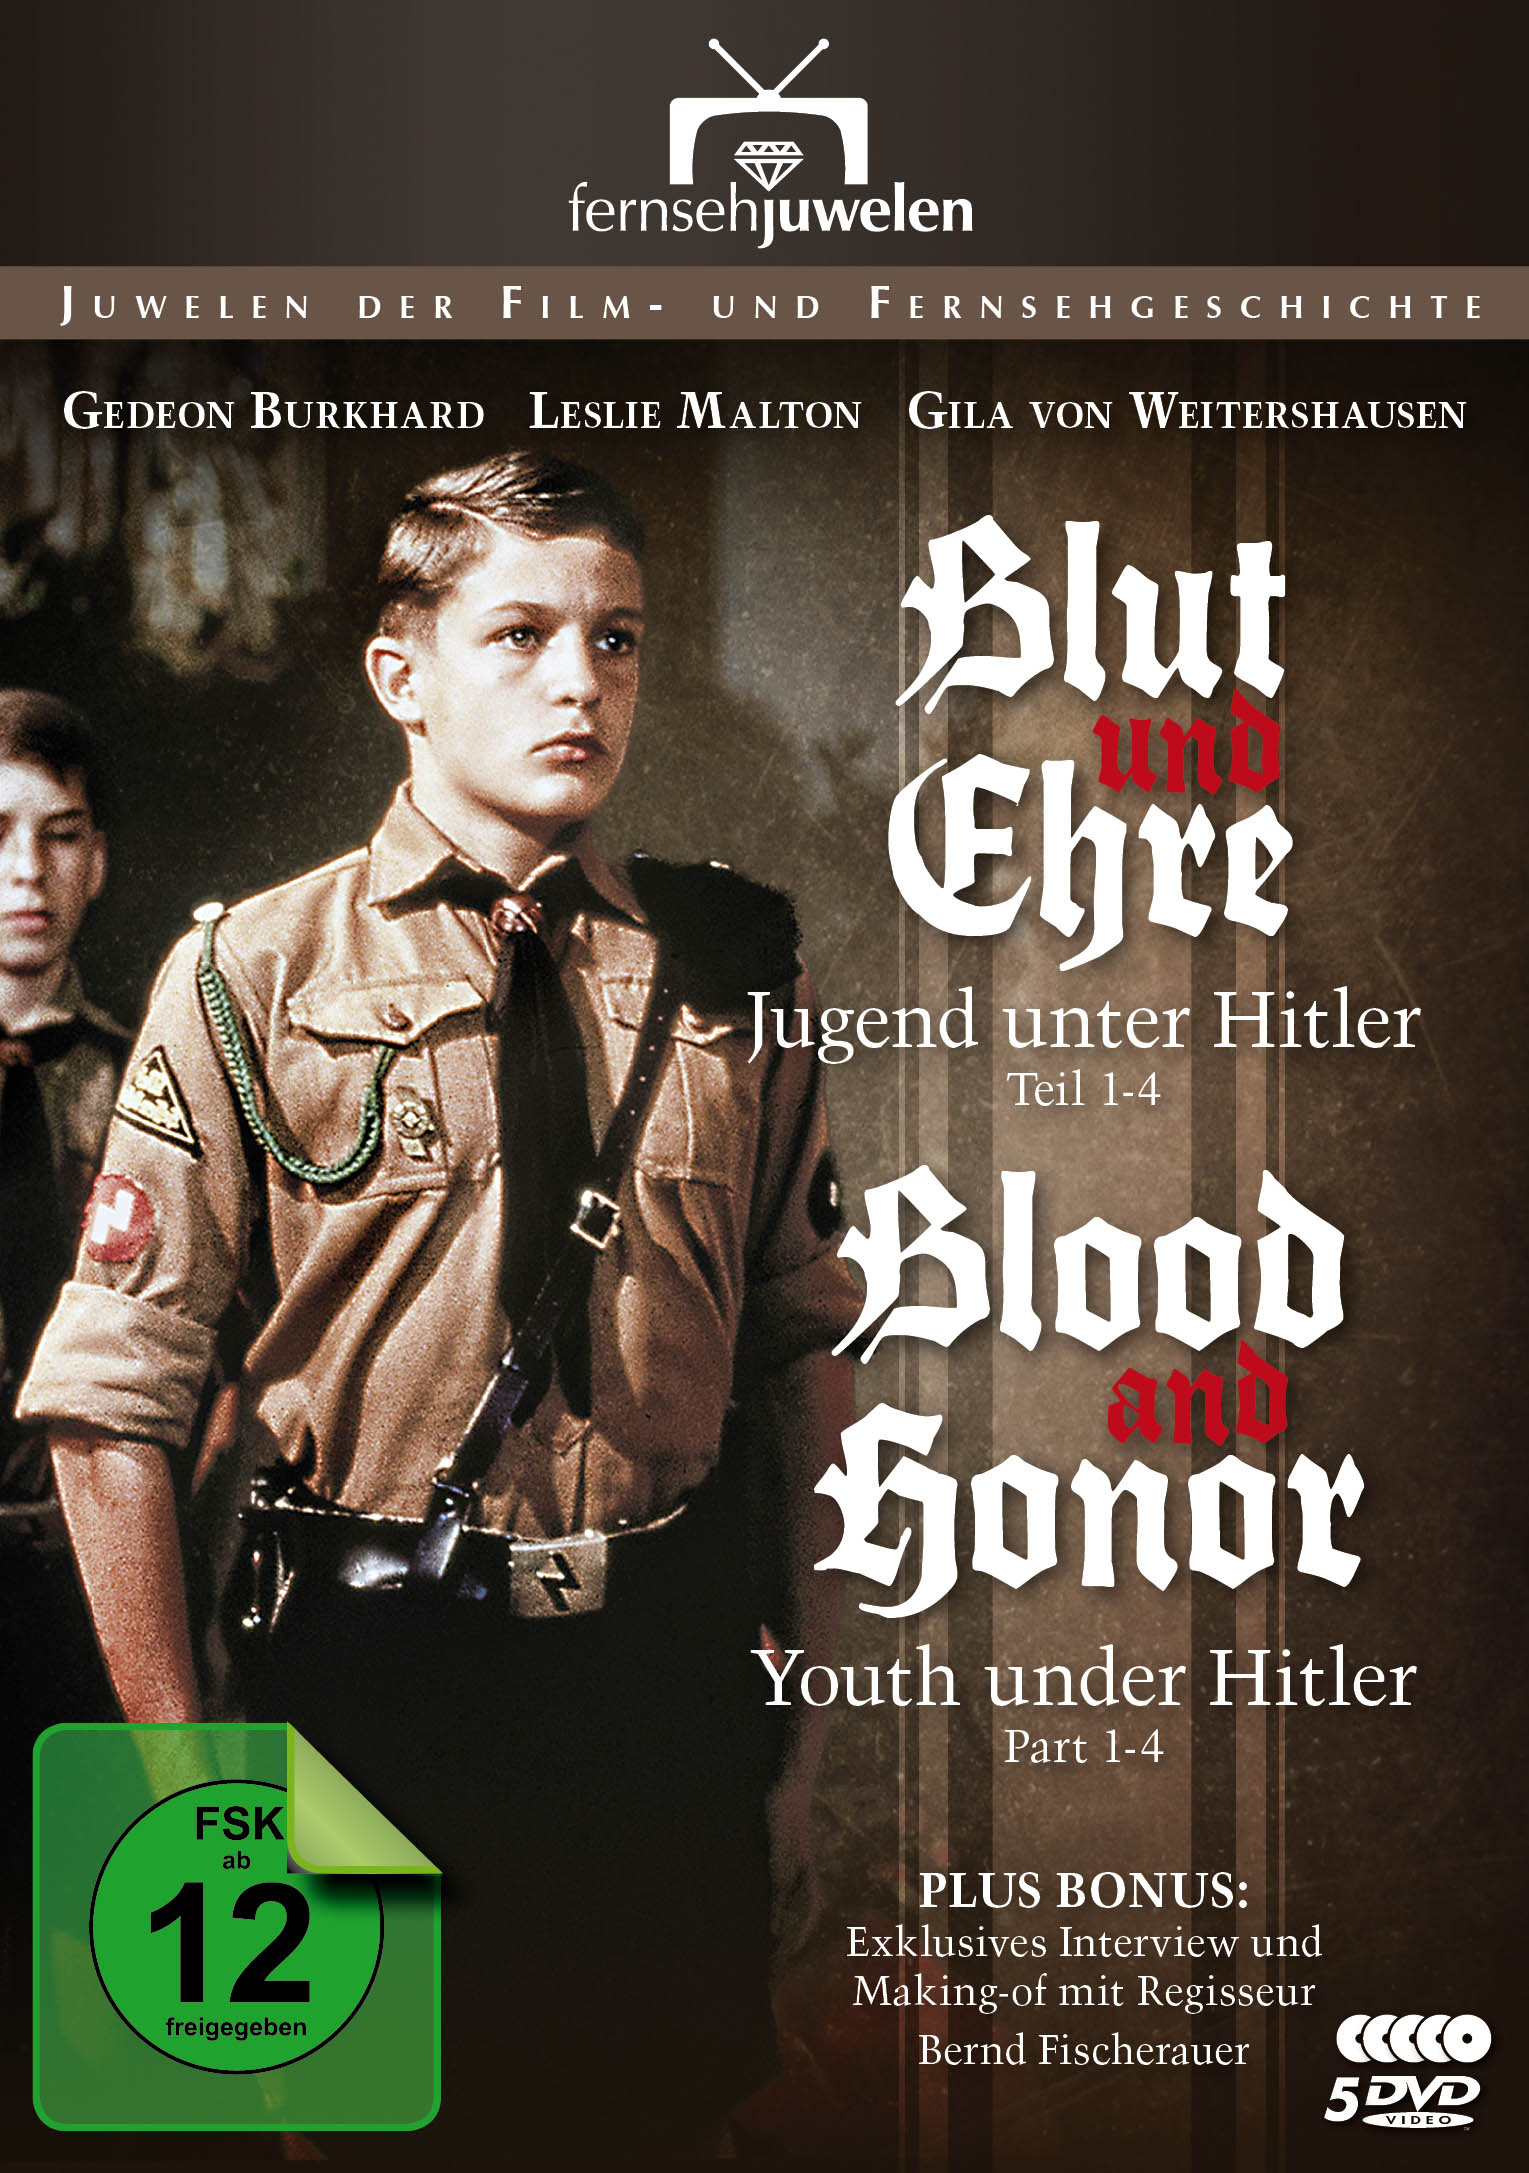 Blut und Ehre - Jugend unter Hitler (inkl. Blood and Honor - Youth under Hitler)